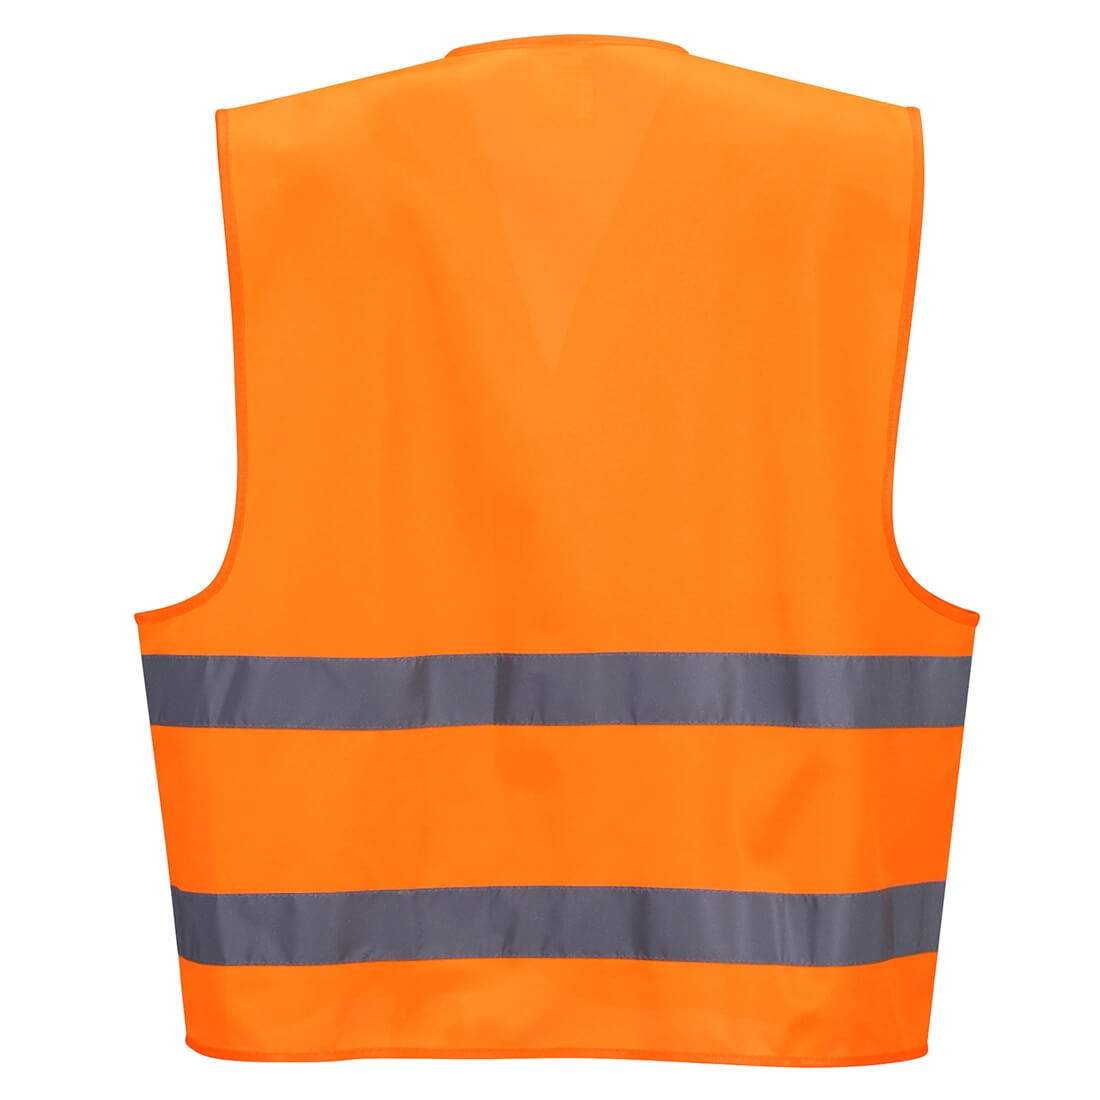 Hi-Vis Vest - ID Holder - Safetywear